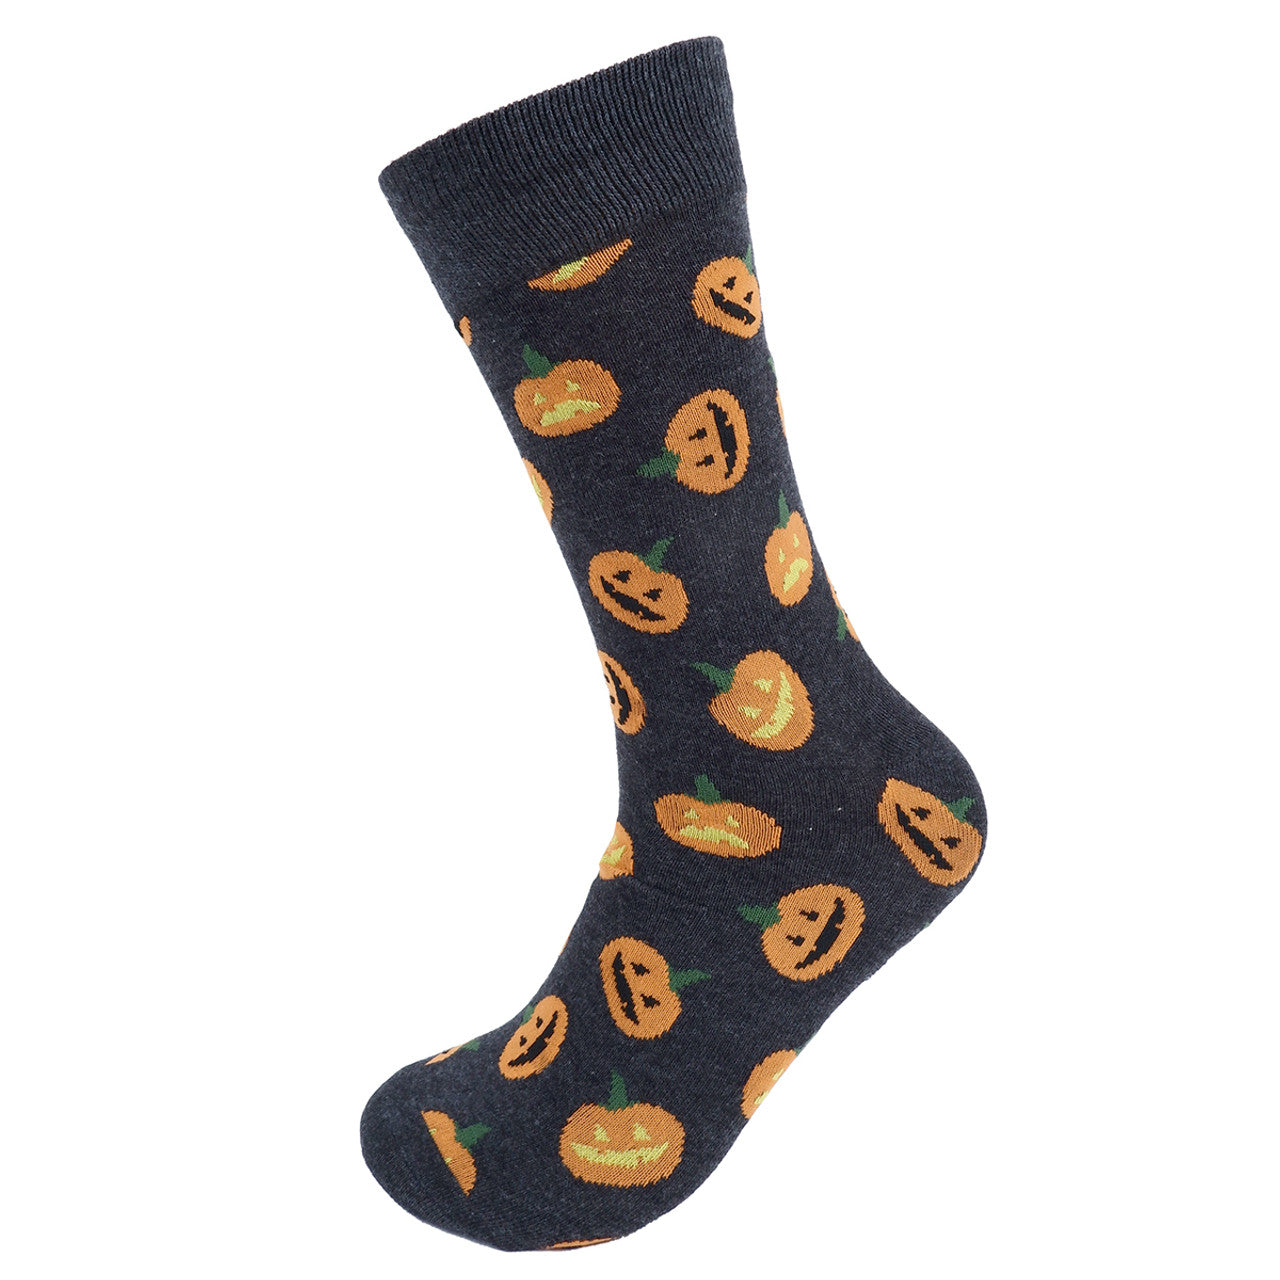 Men's Halloween Pumpkin Crew Socks - Charcoal Gray